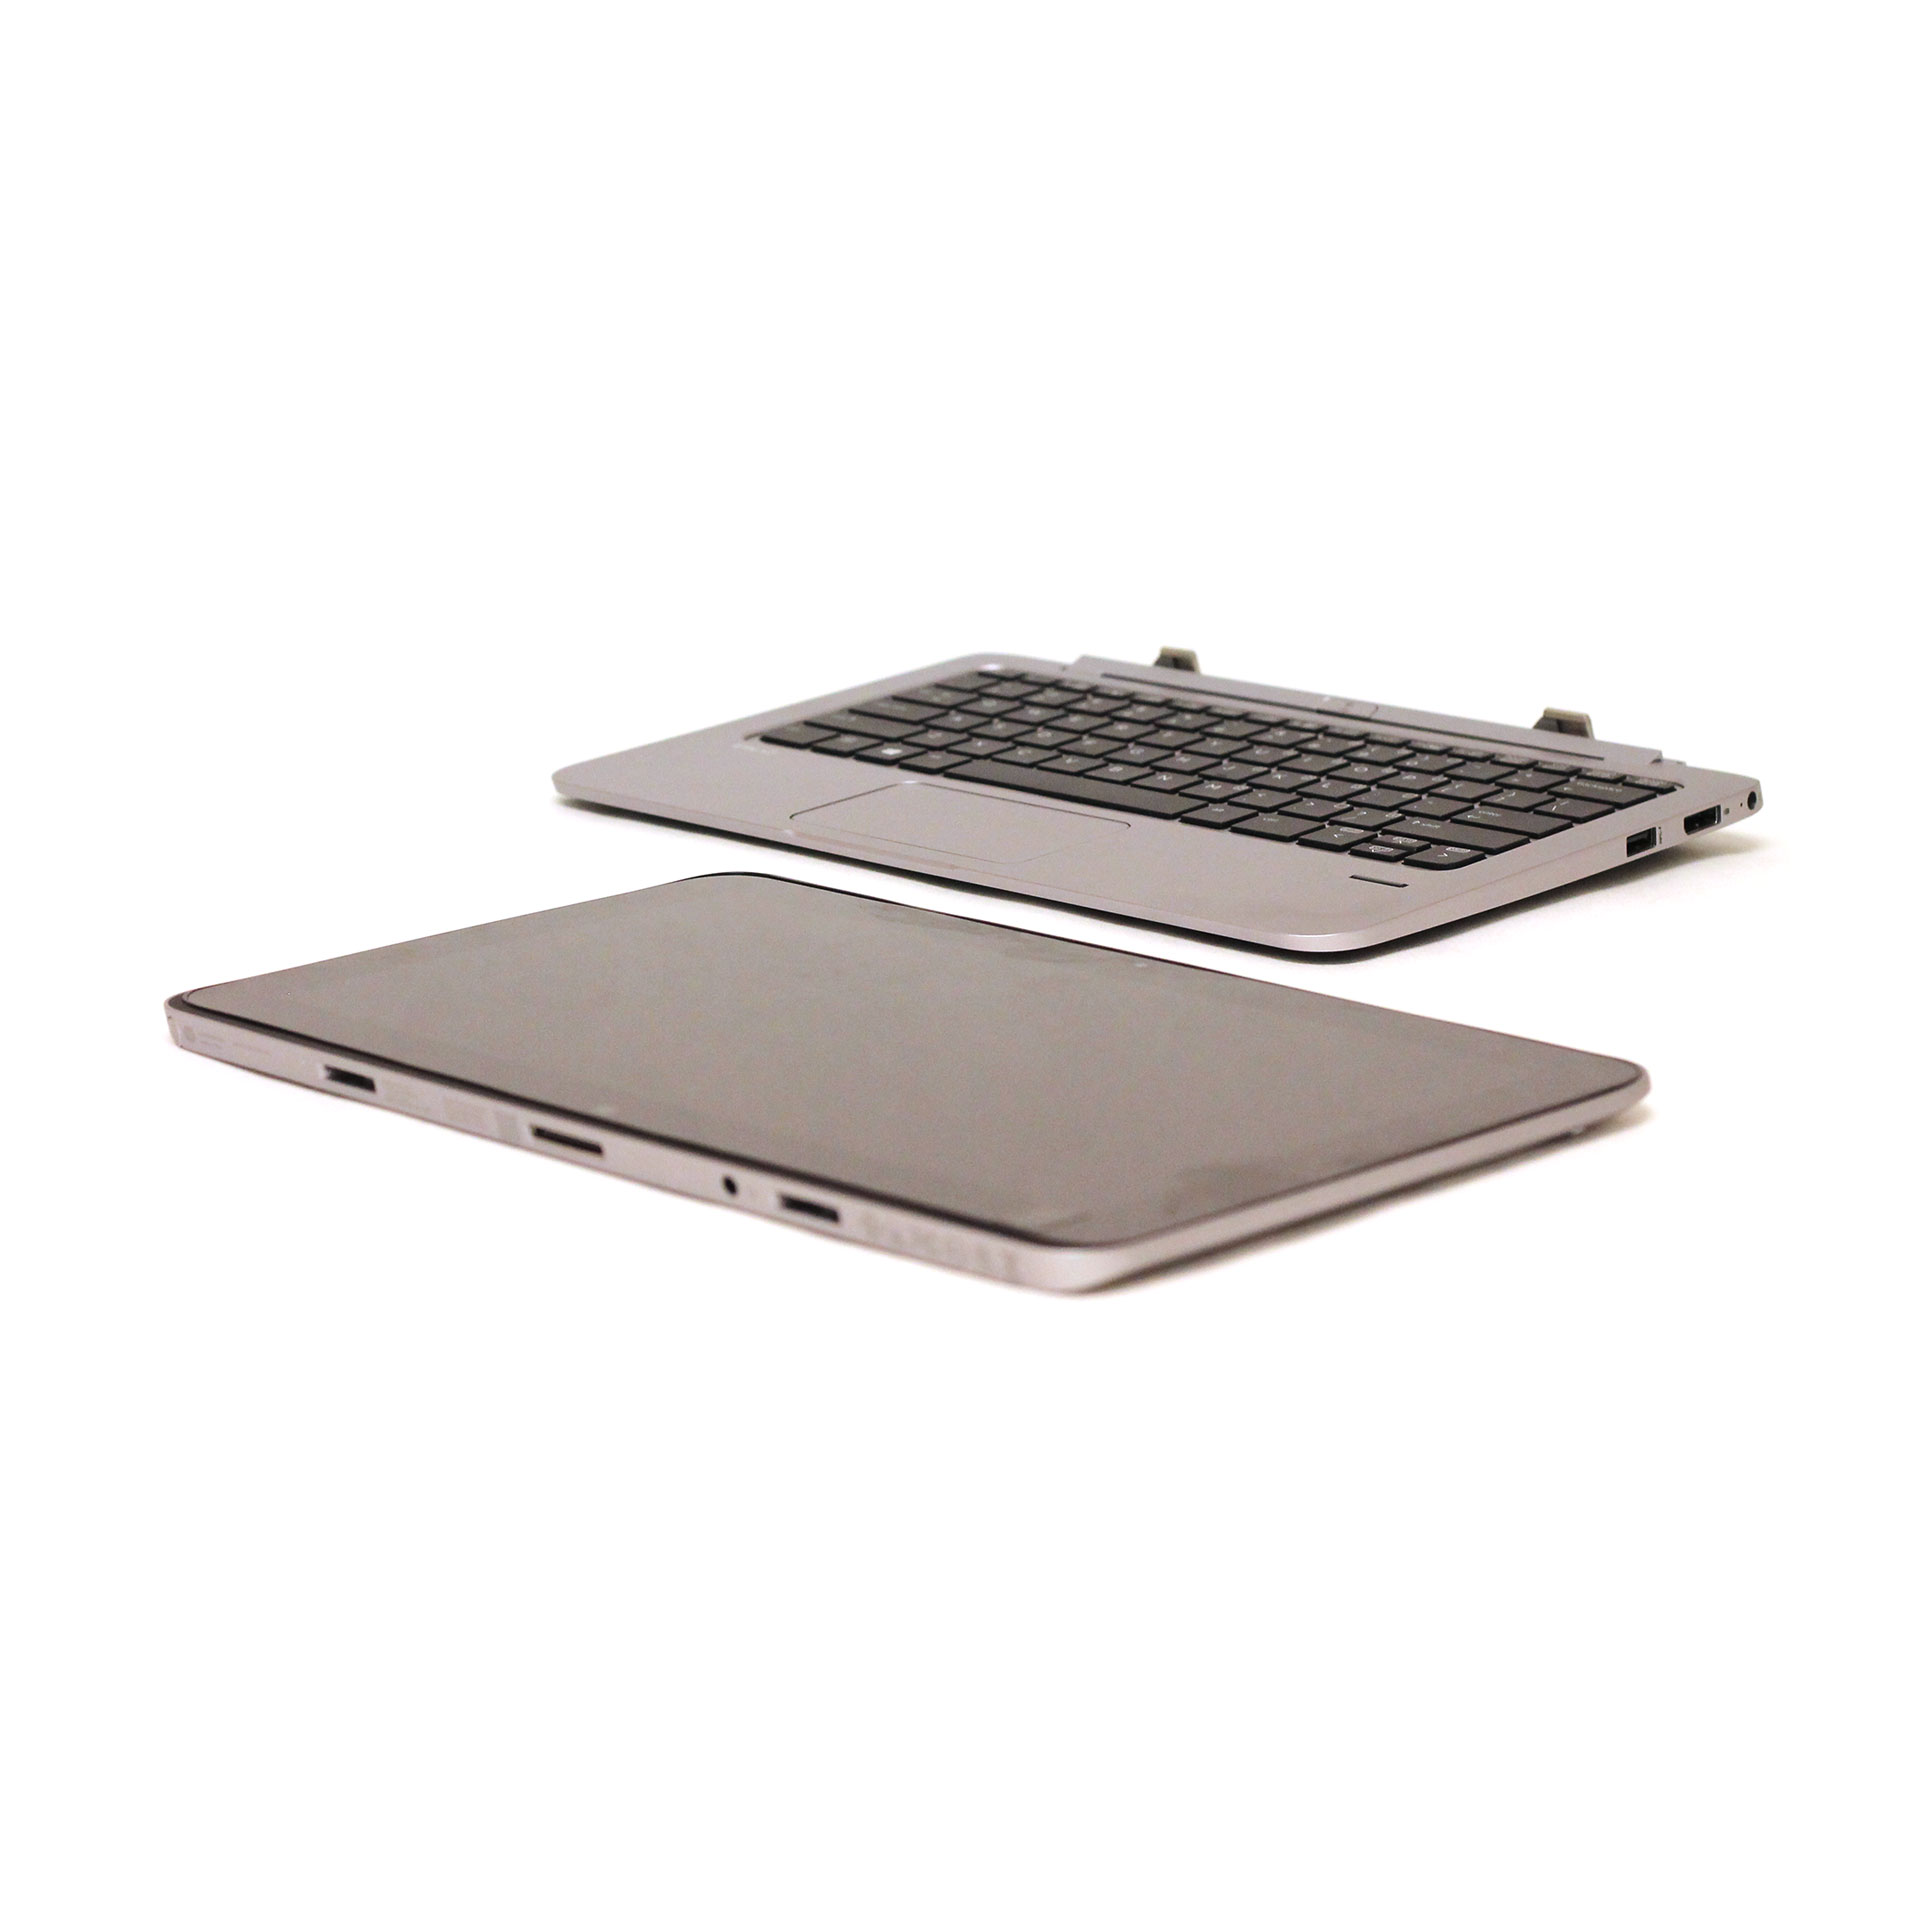 HP SB Elite Tablet Ultrabook 1011 G1 L9H48UT 11.6" M-5Y71 4G 8GB